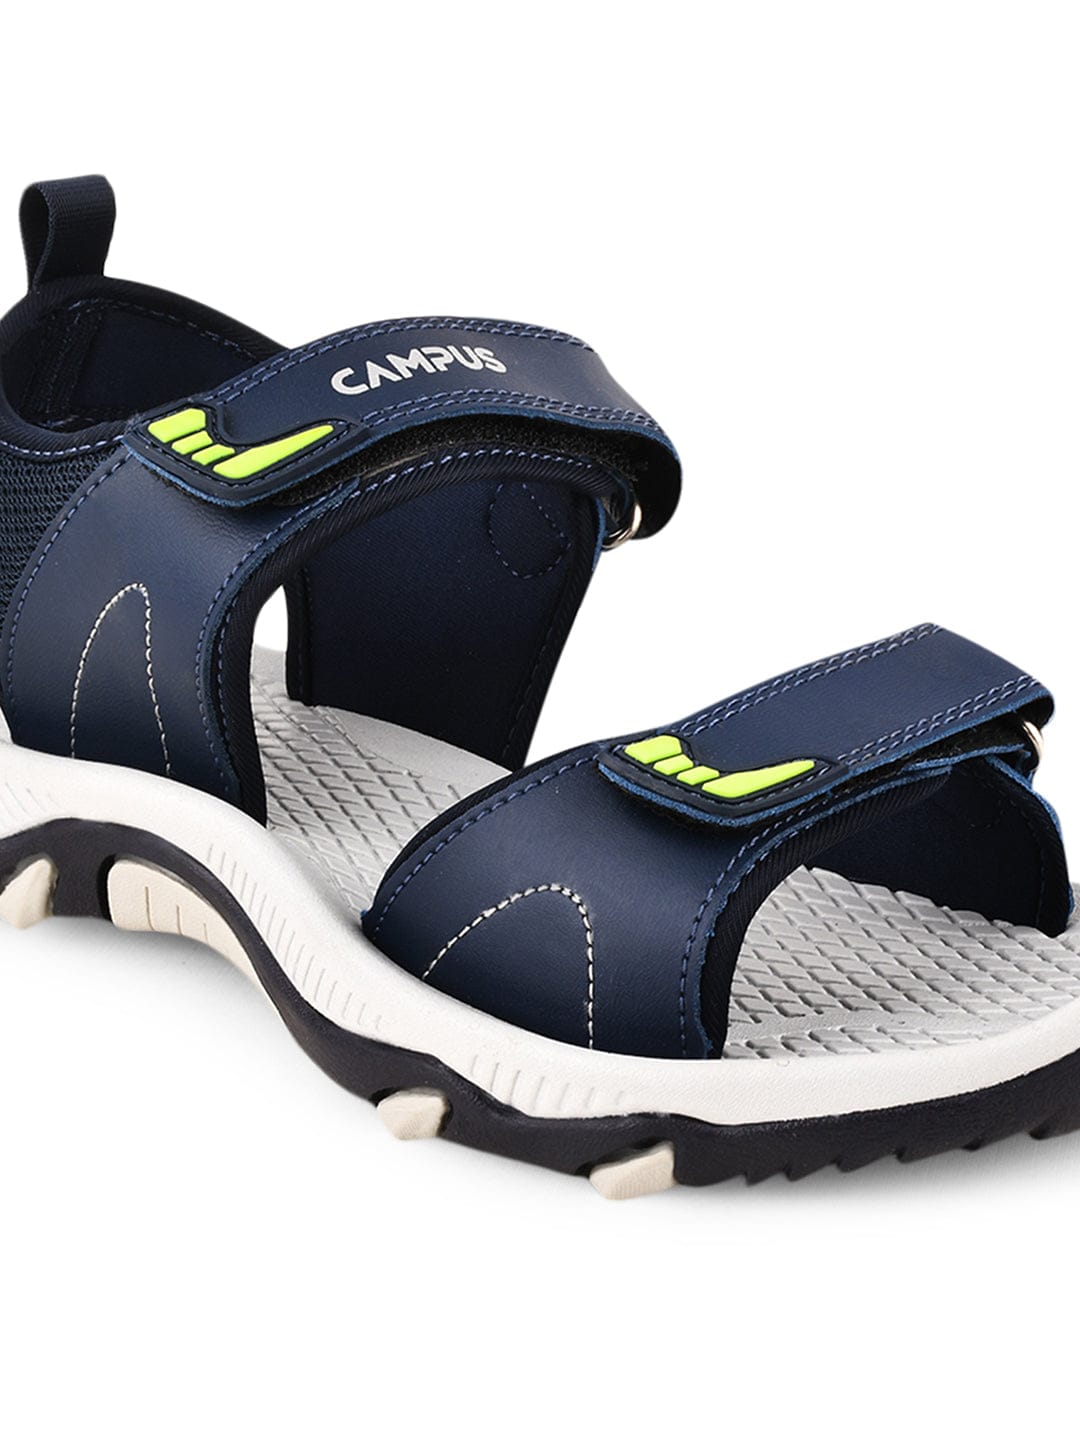 Buy Campus GC-15 Black Men Sandals Online